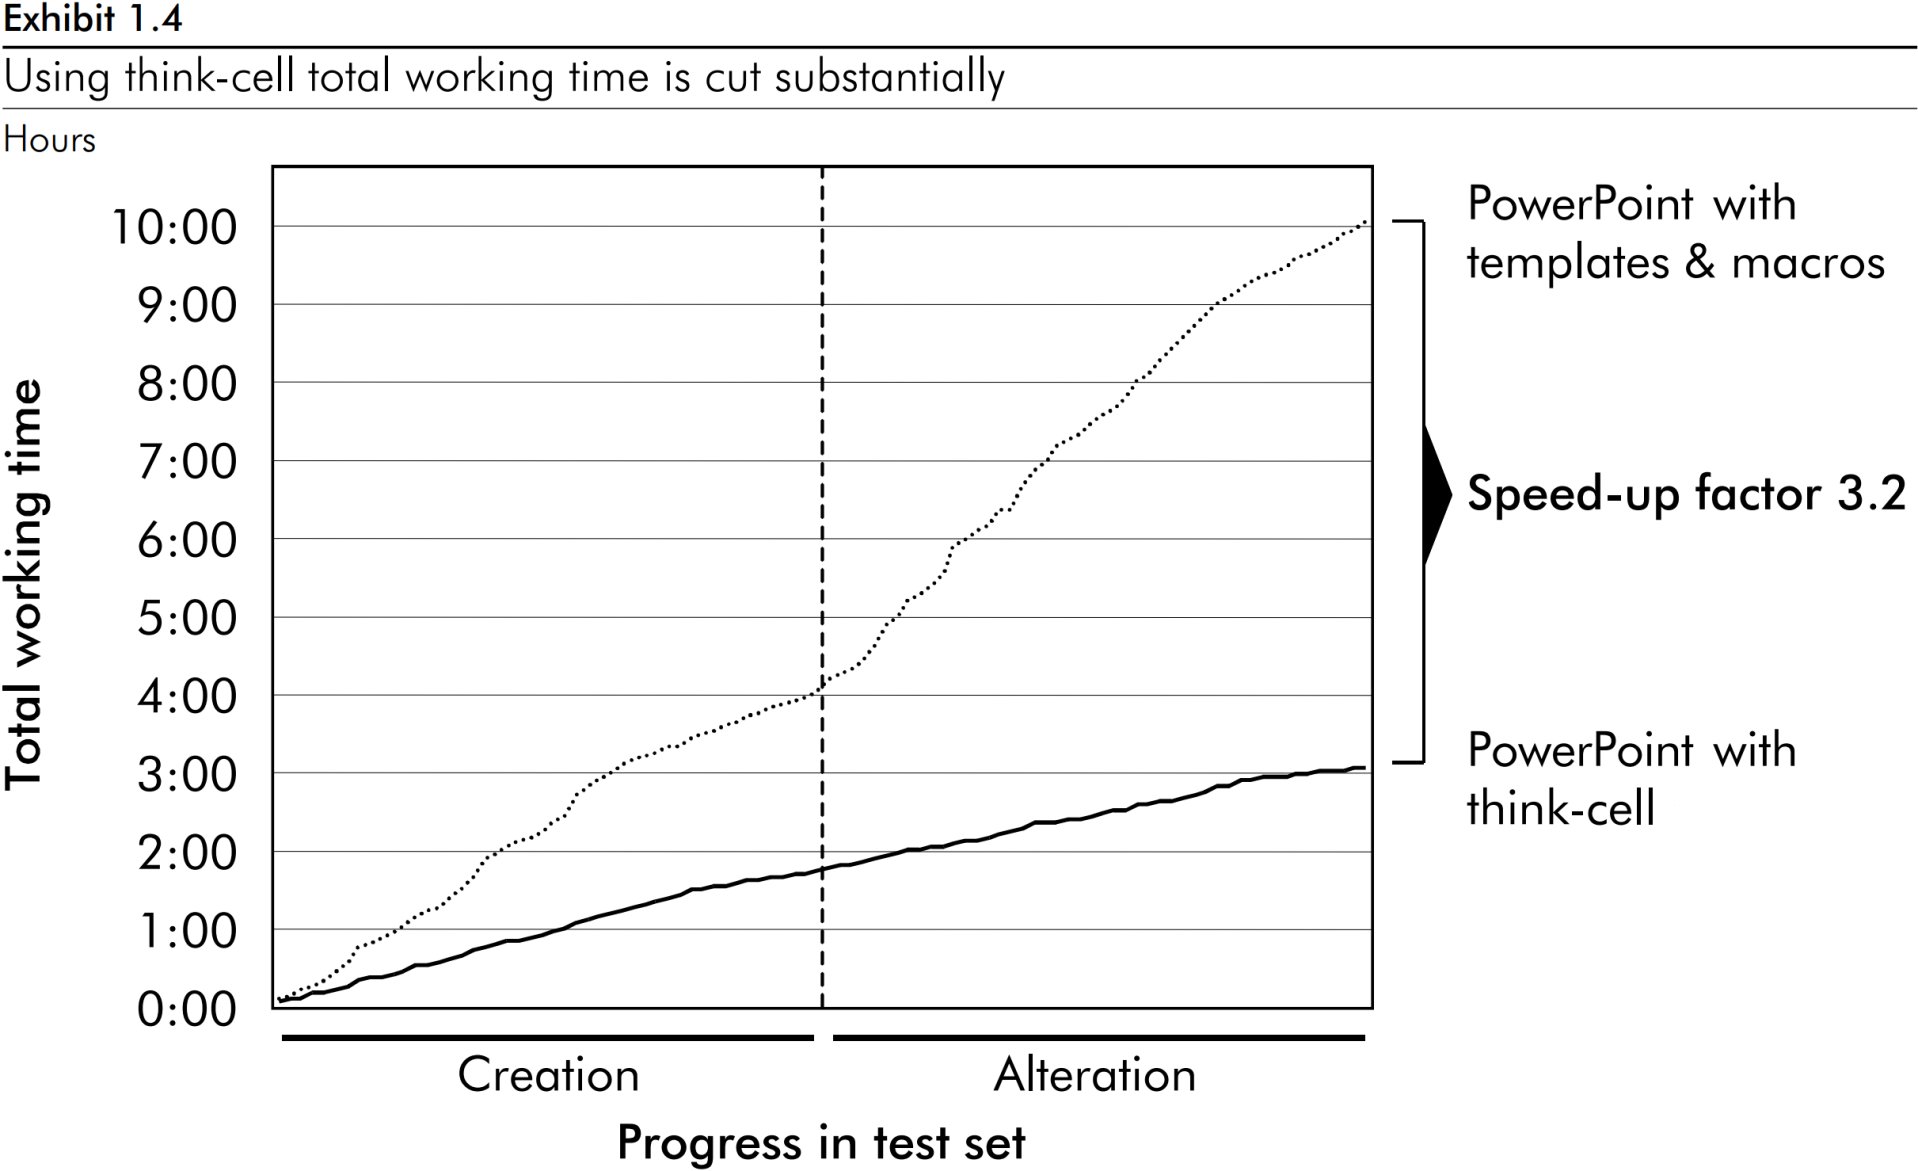 Graphique à lignes montrant un facteur d’accélération de 3,2 de la durée totale de travail sur les graphiques avec think-cell.